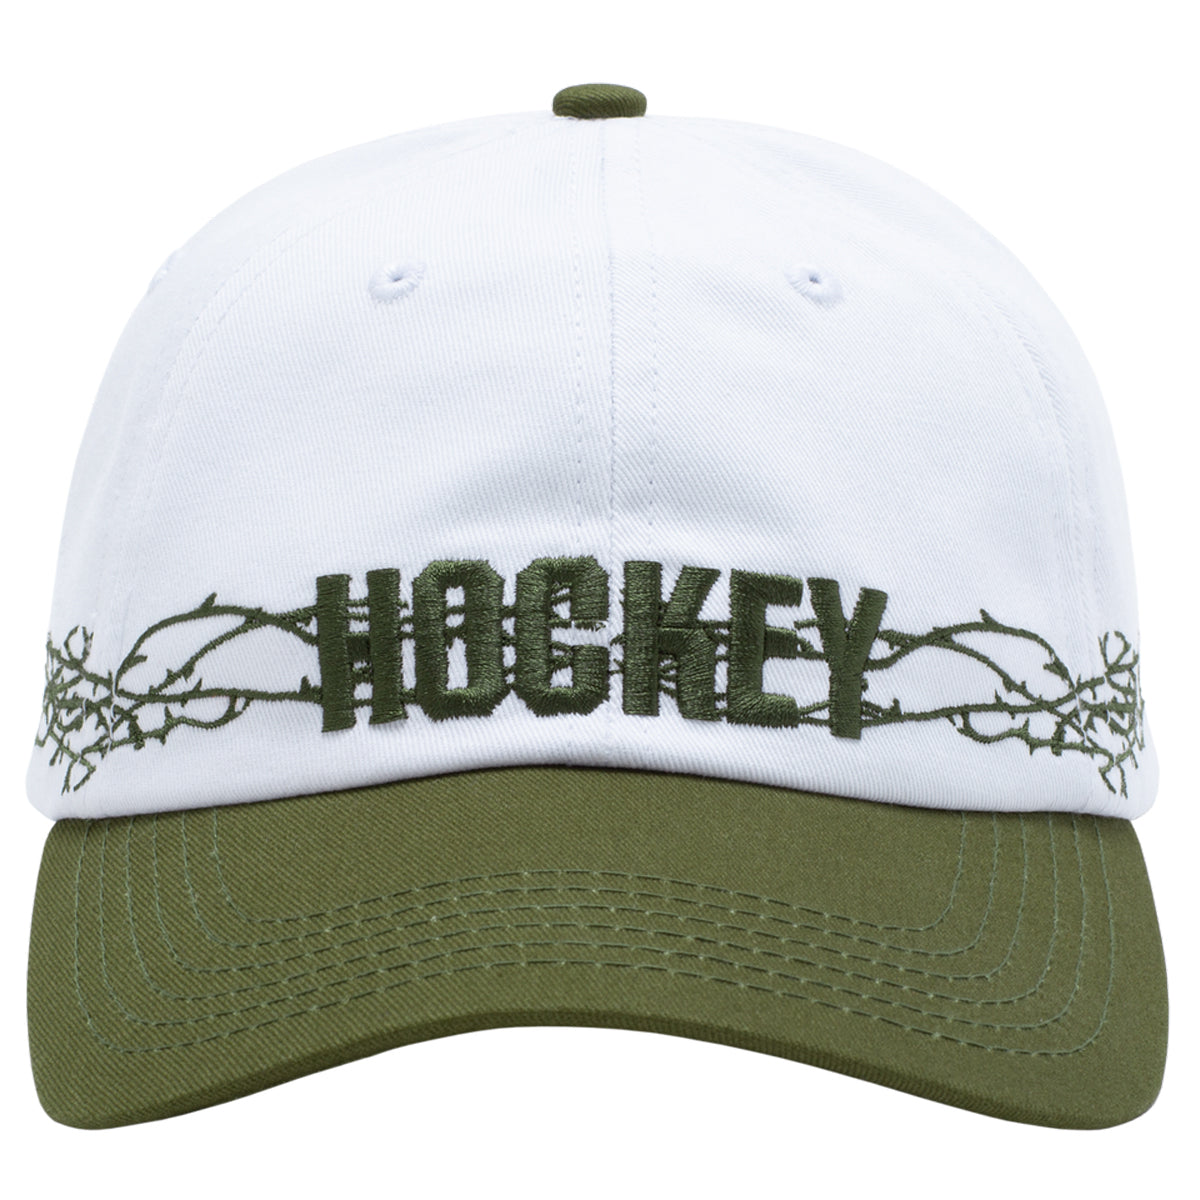 Hockey Thorns Hat - White/Dark Green image 3